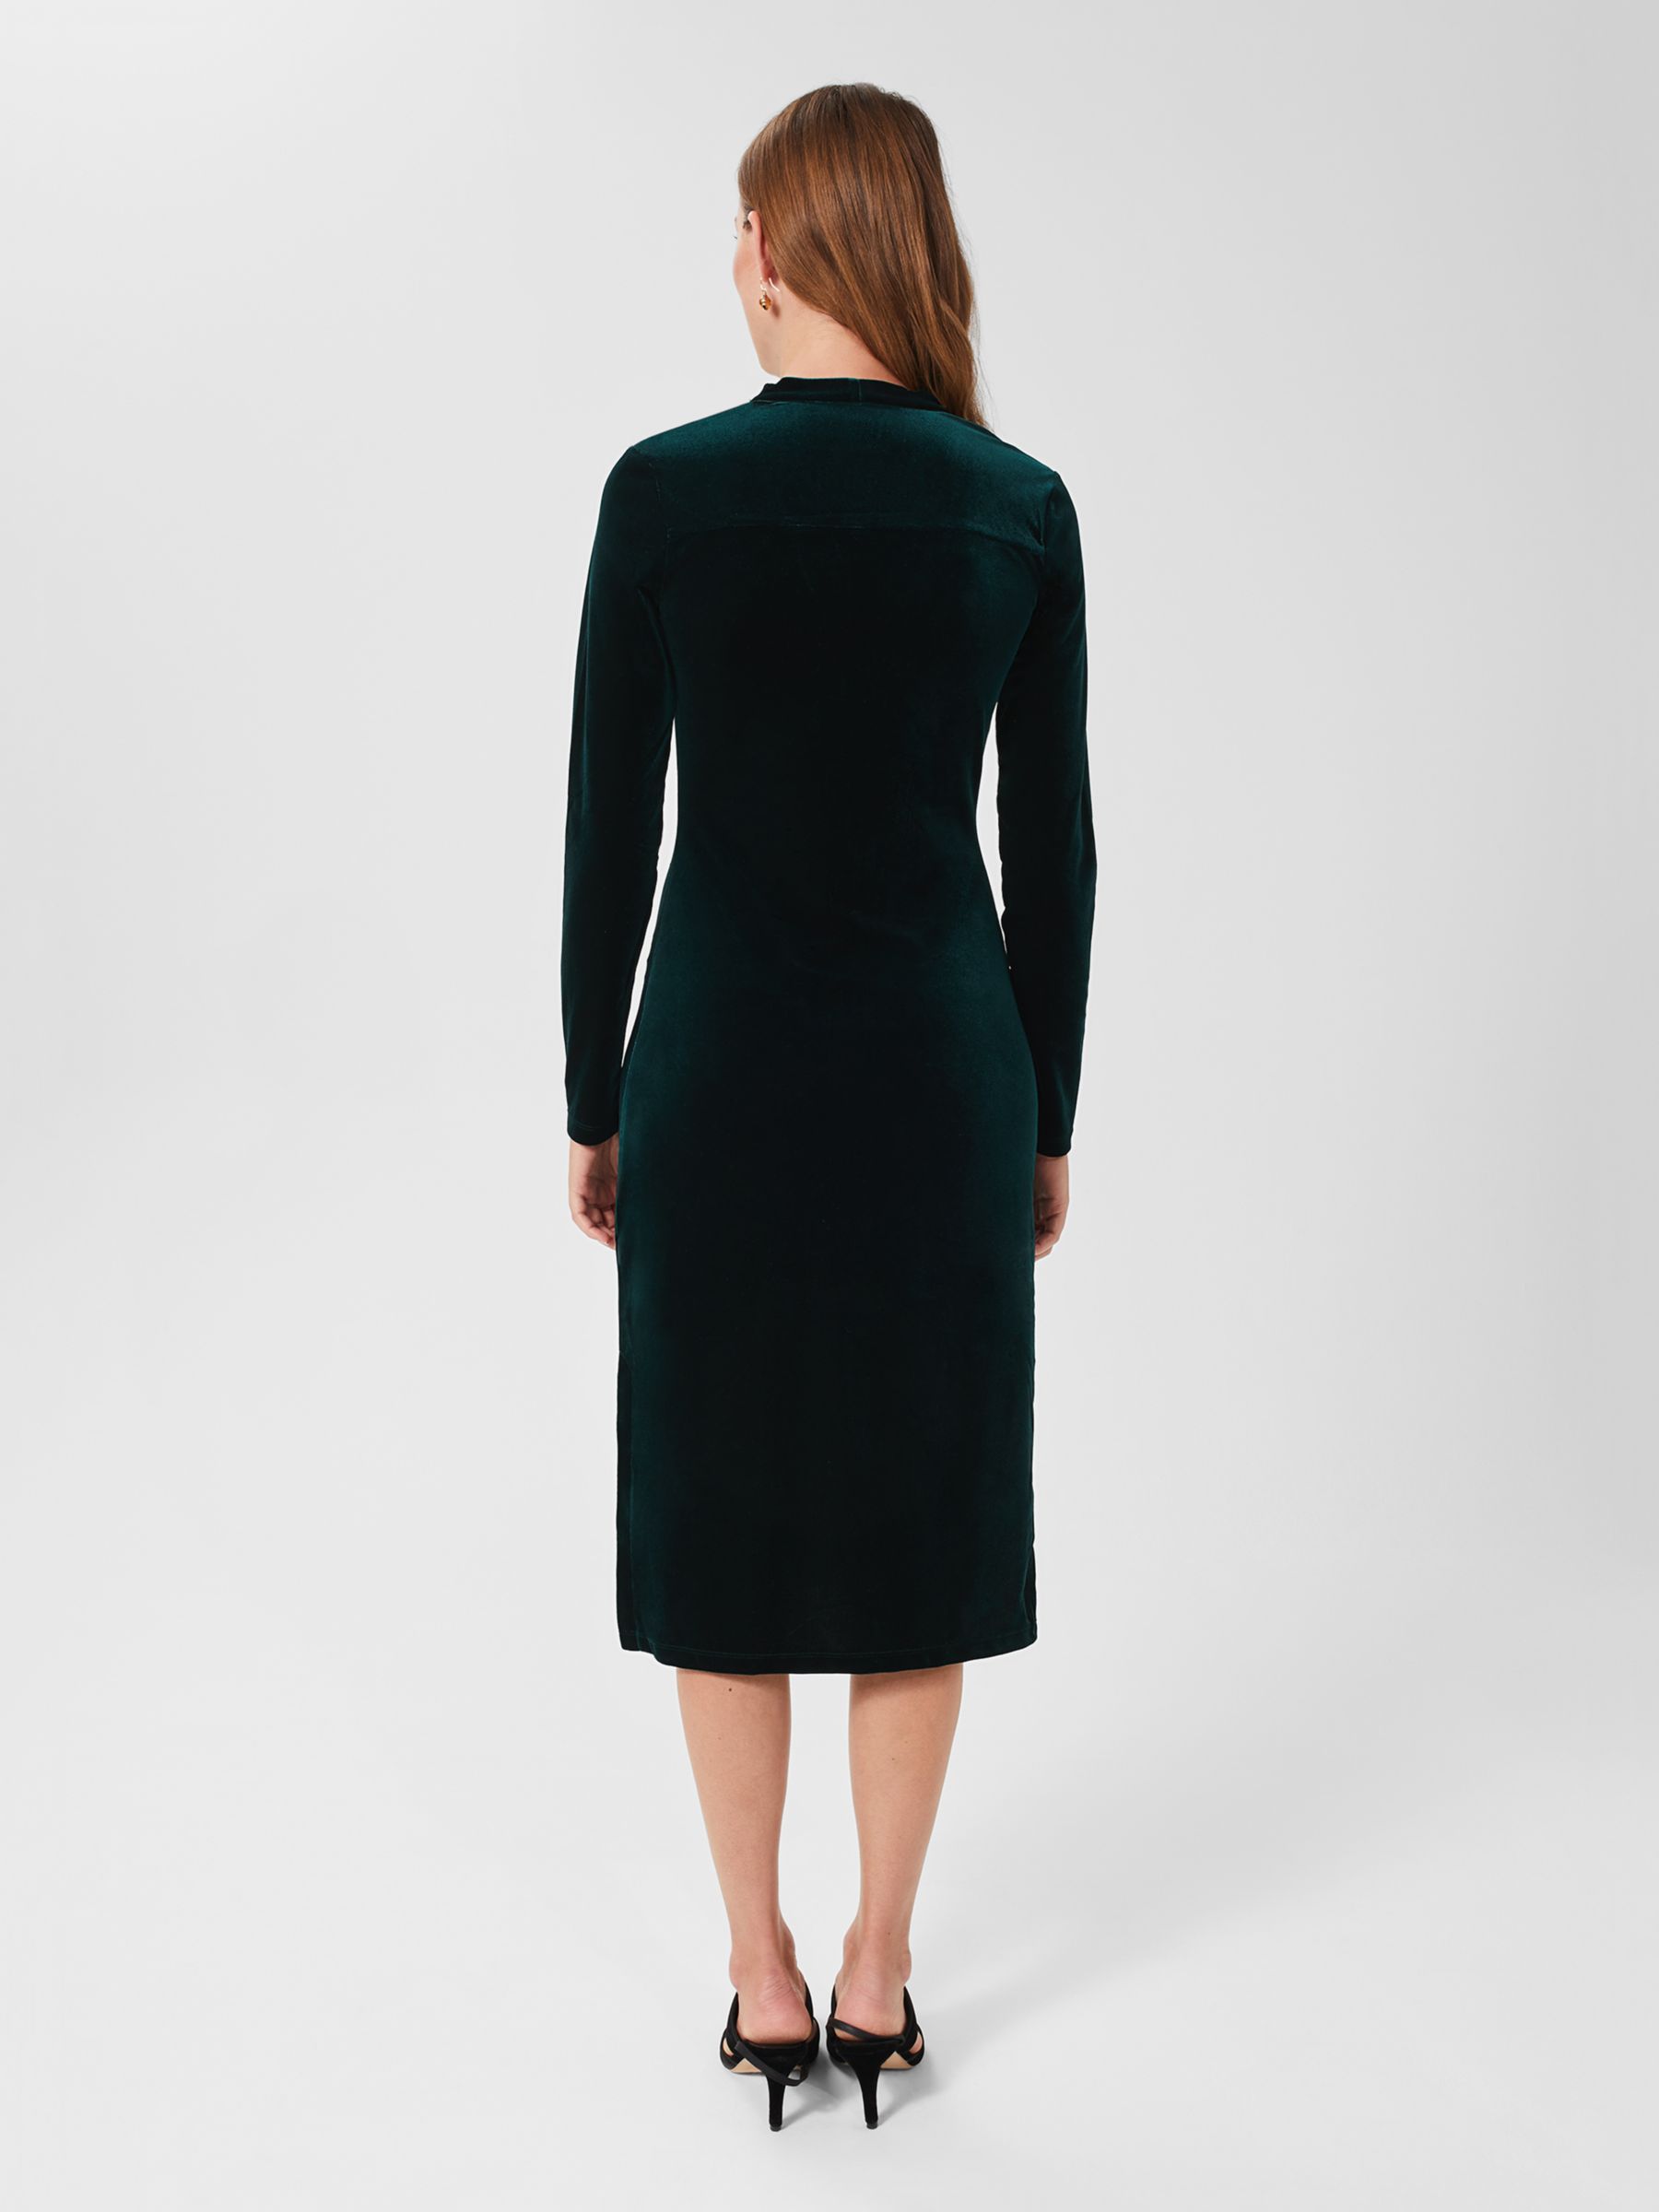 Hobbs Hatty Velvet Dress, Dark Green at John Lewis & Partners